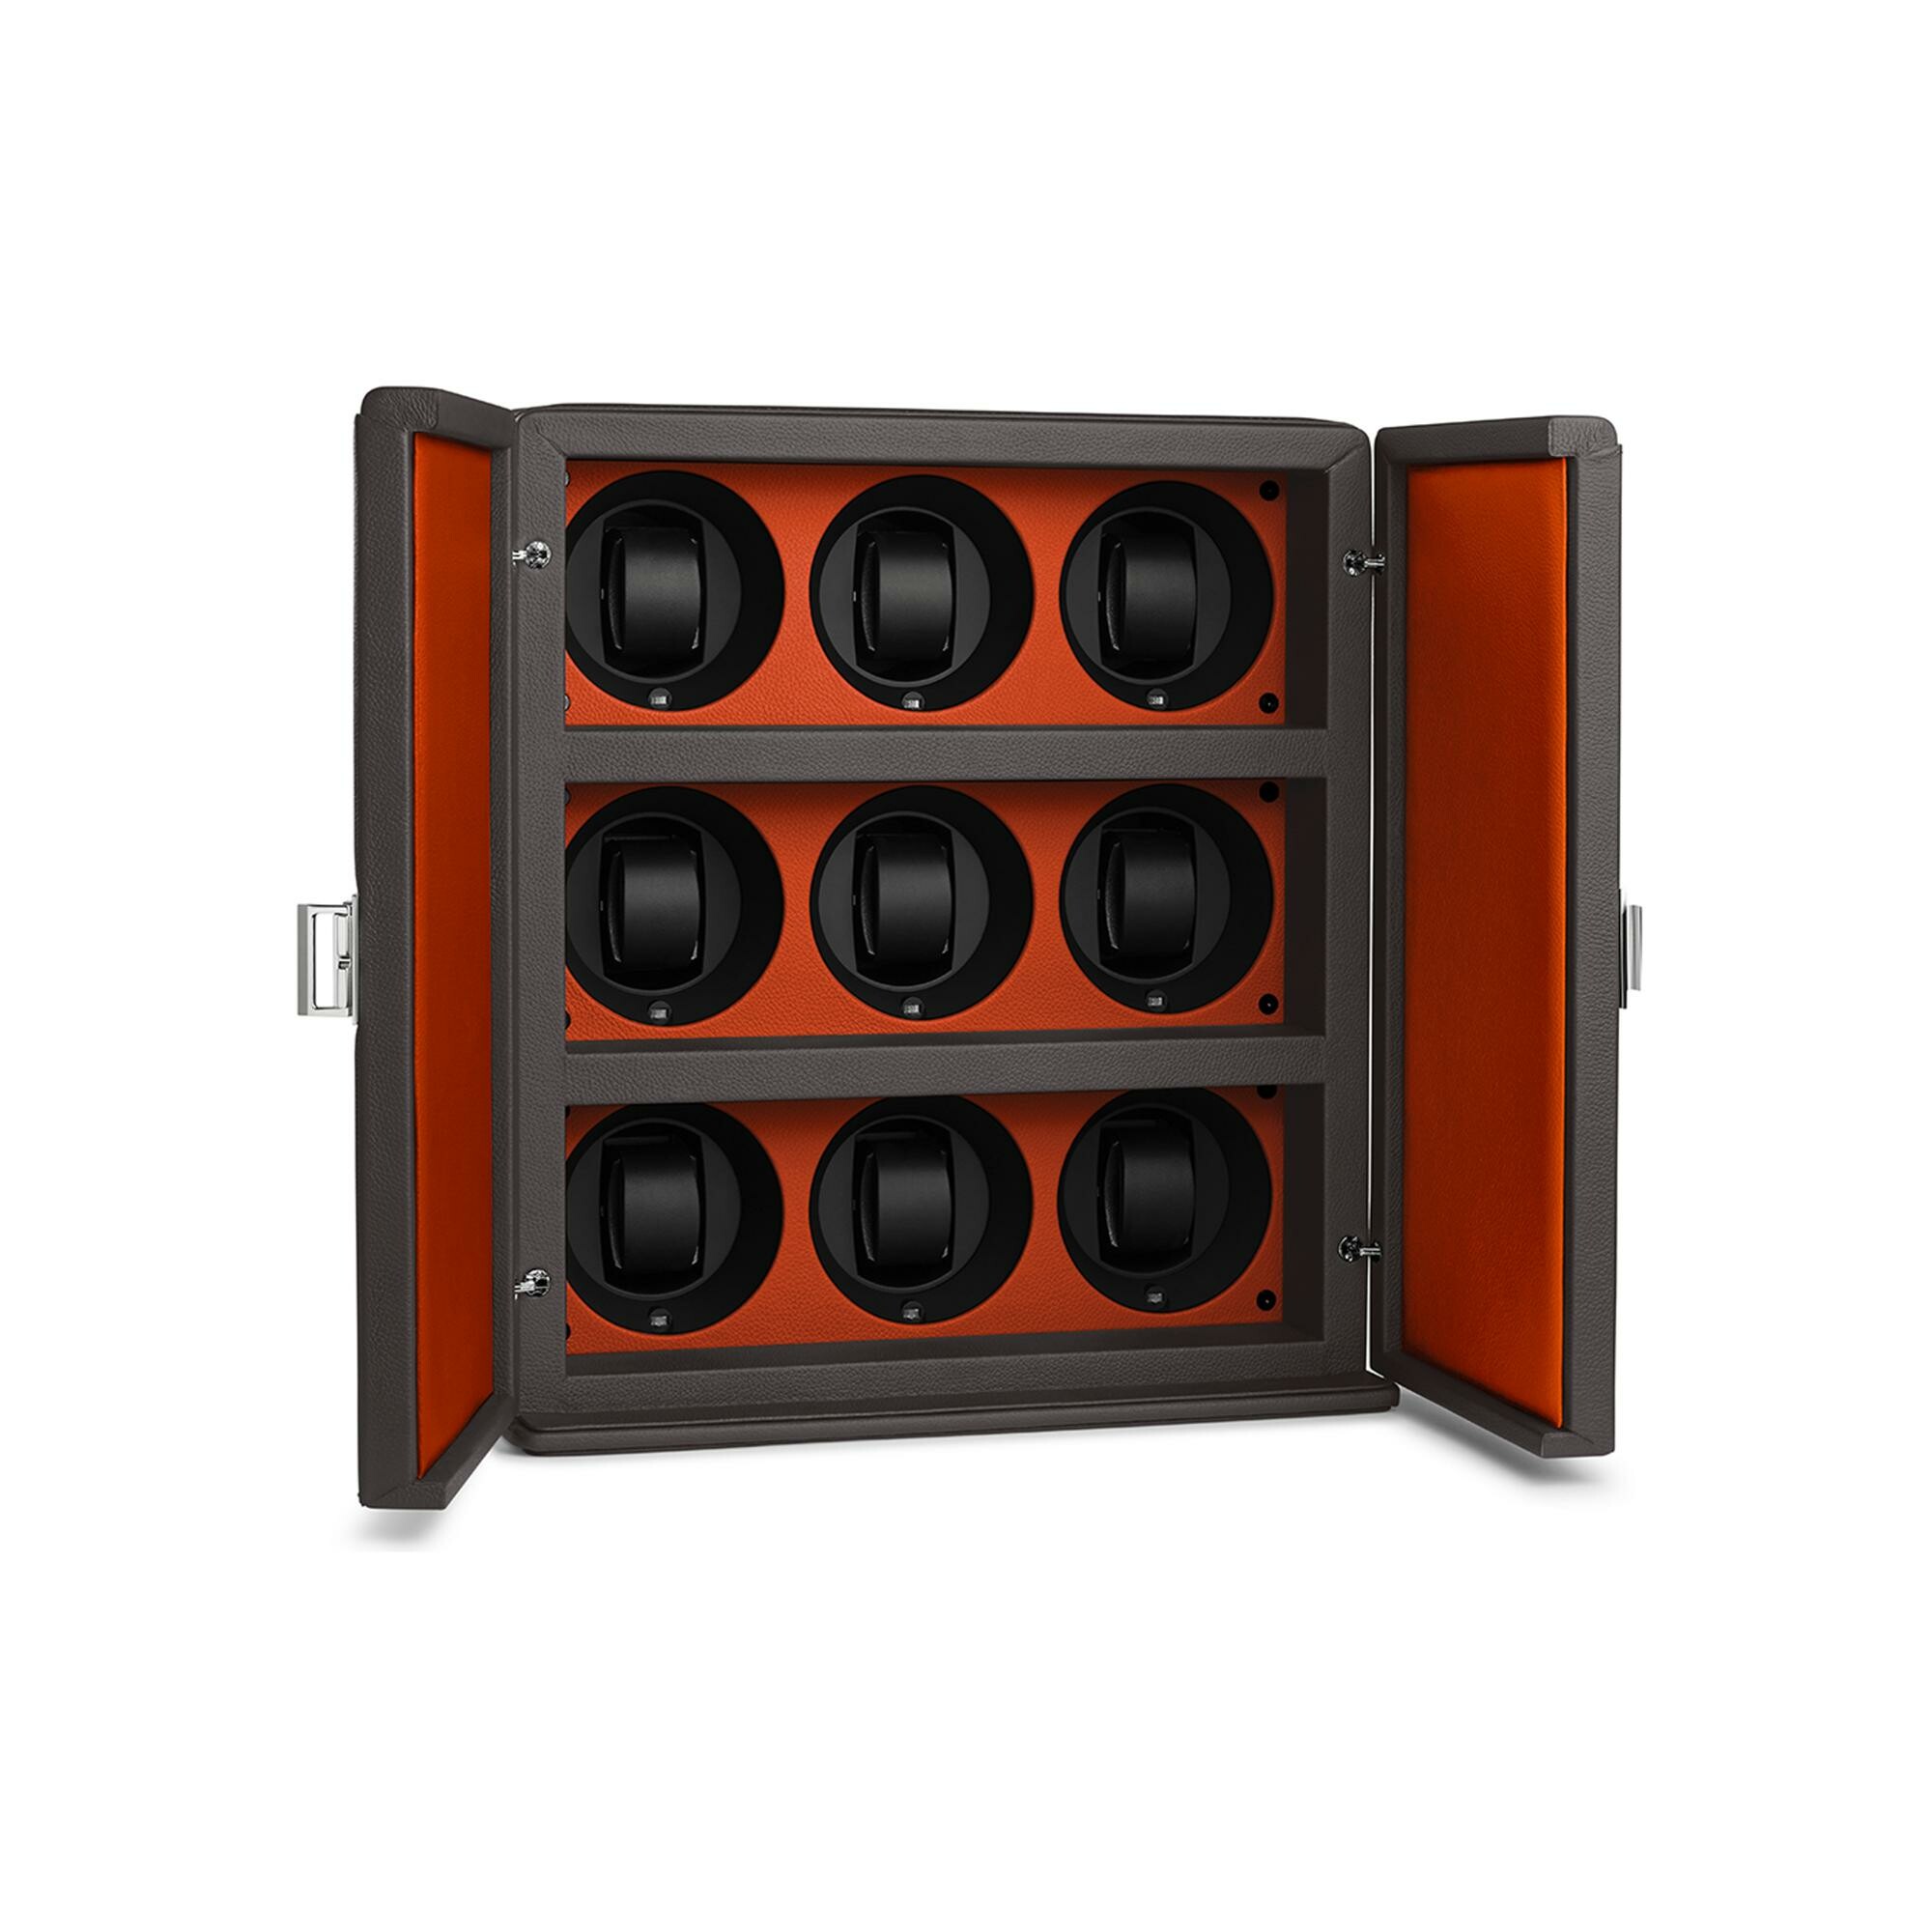 Valise Scatola del tempo avec 6 remontoirs programmables, en cuir gris et orange vue 1